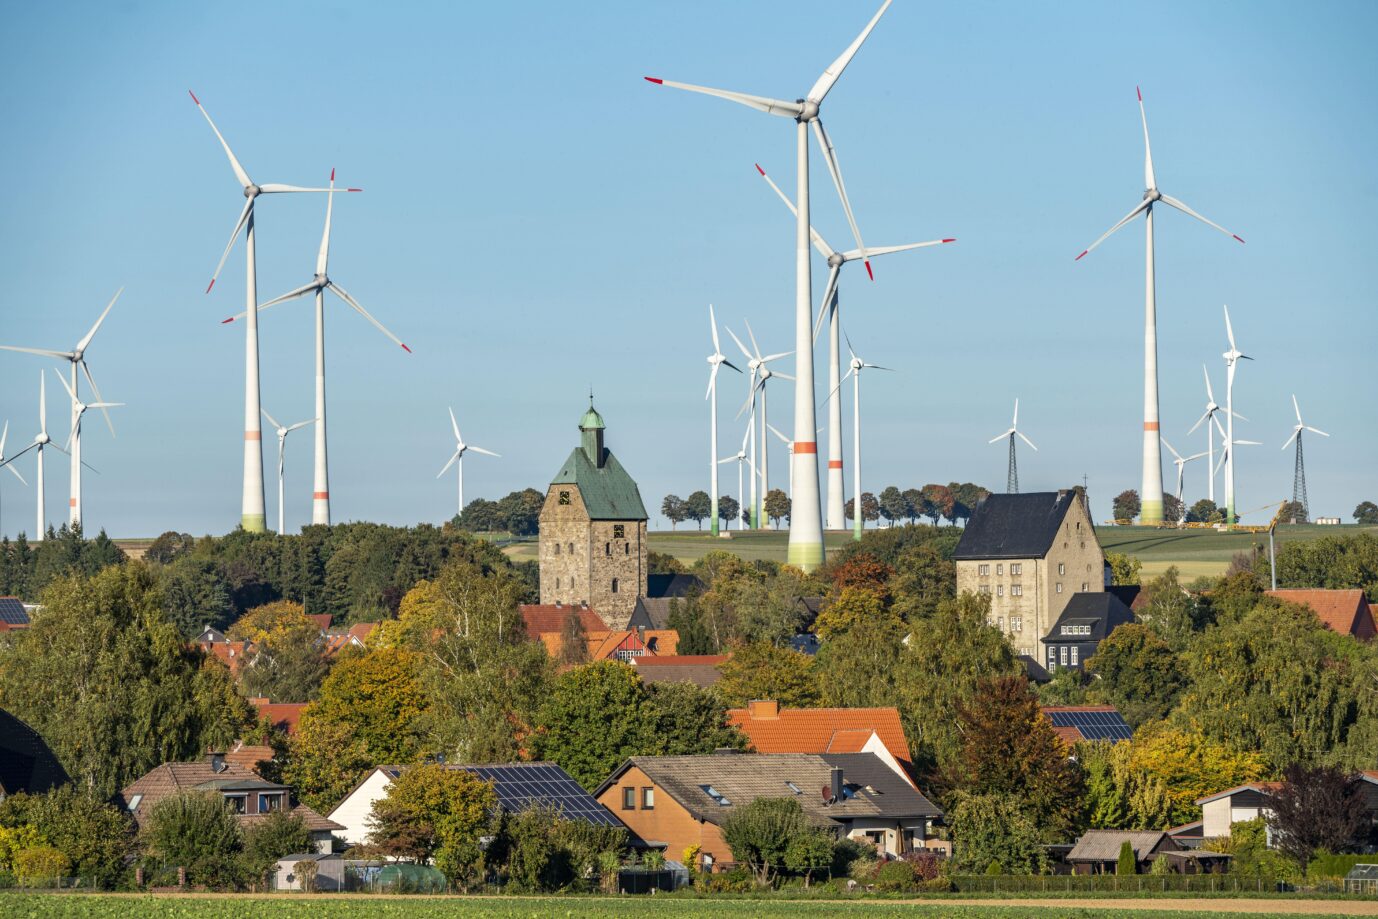 Die Union will viel mehr davon: Windräder dominieren die alte Dorf Silhouette des Ort Lichtenau im Kreis Paderborn.